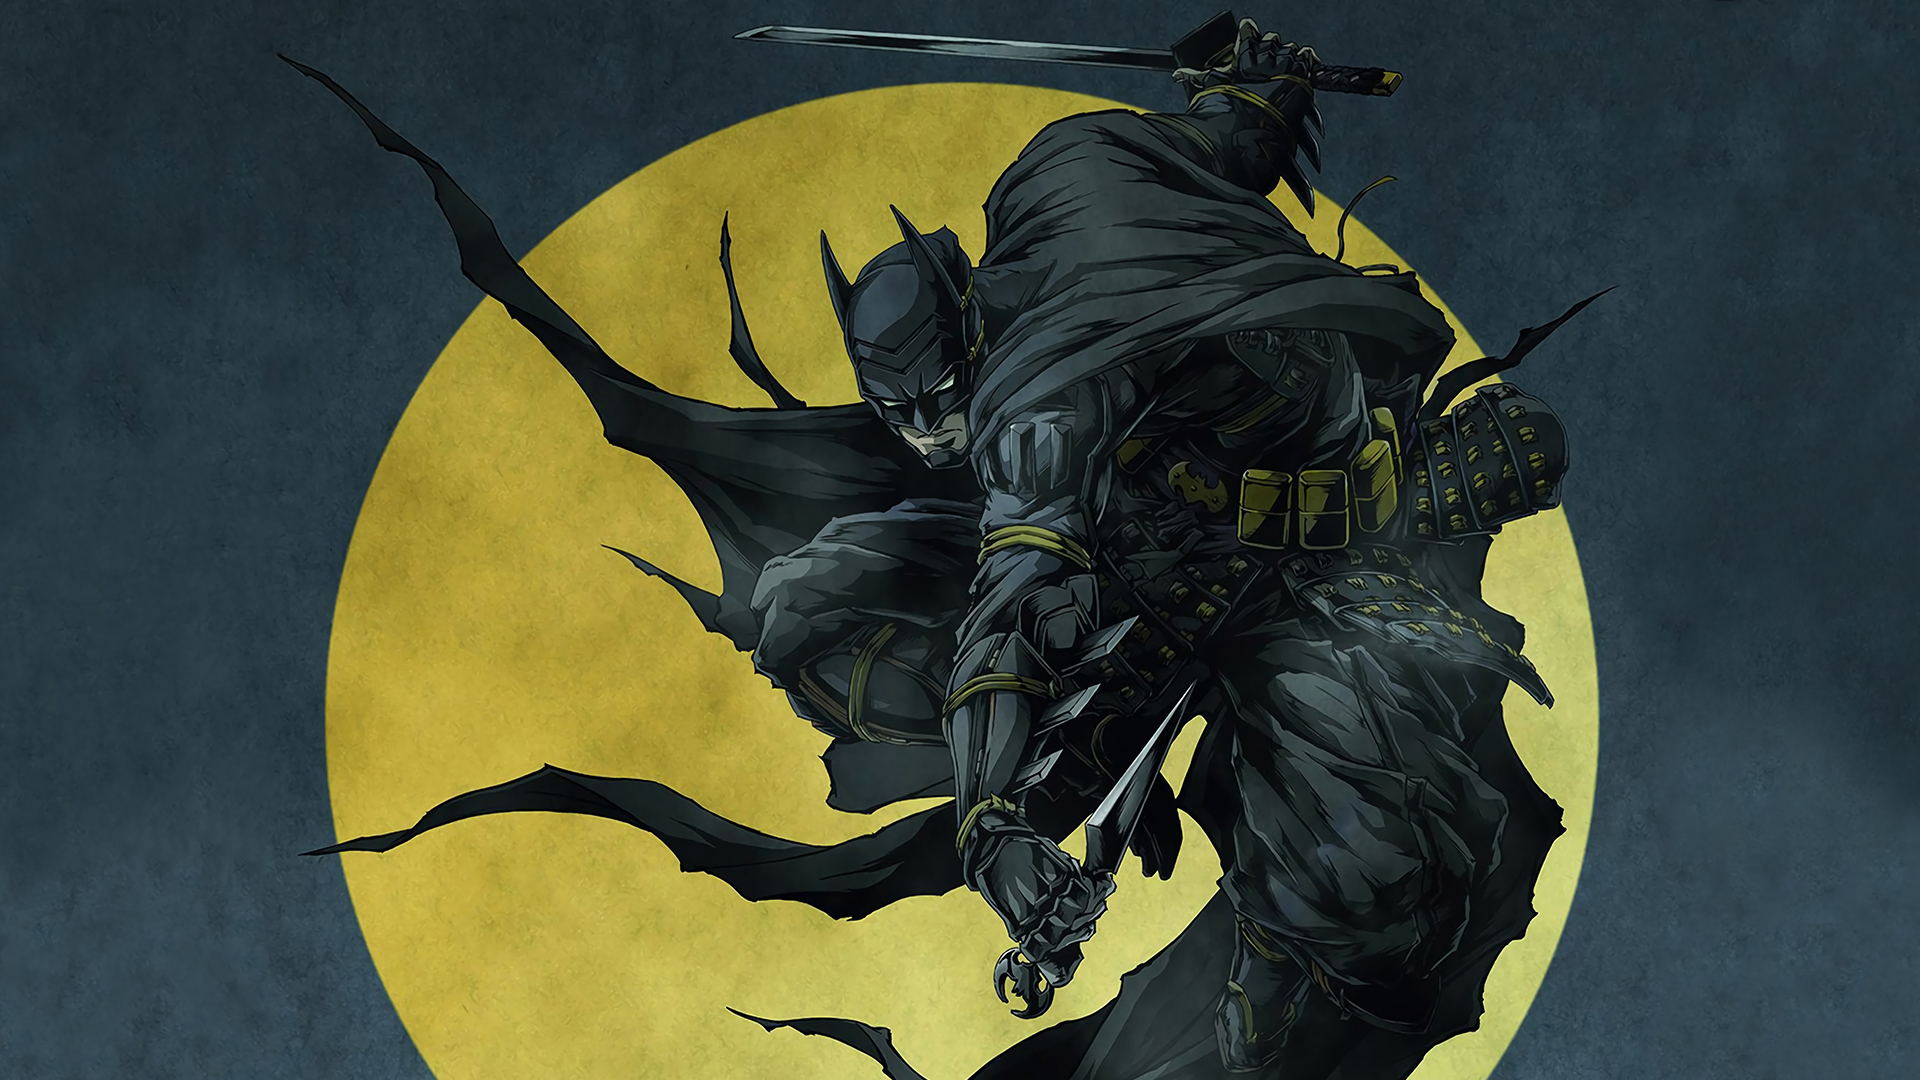 Fondos de pantalla de Batman Ninja para escritorio, descarga gratis  imágenes y fondos de Batman Ninja para PC 